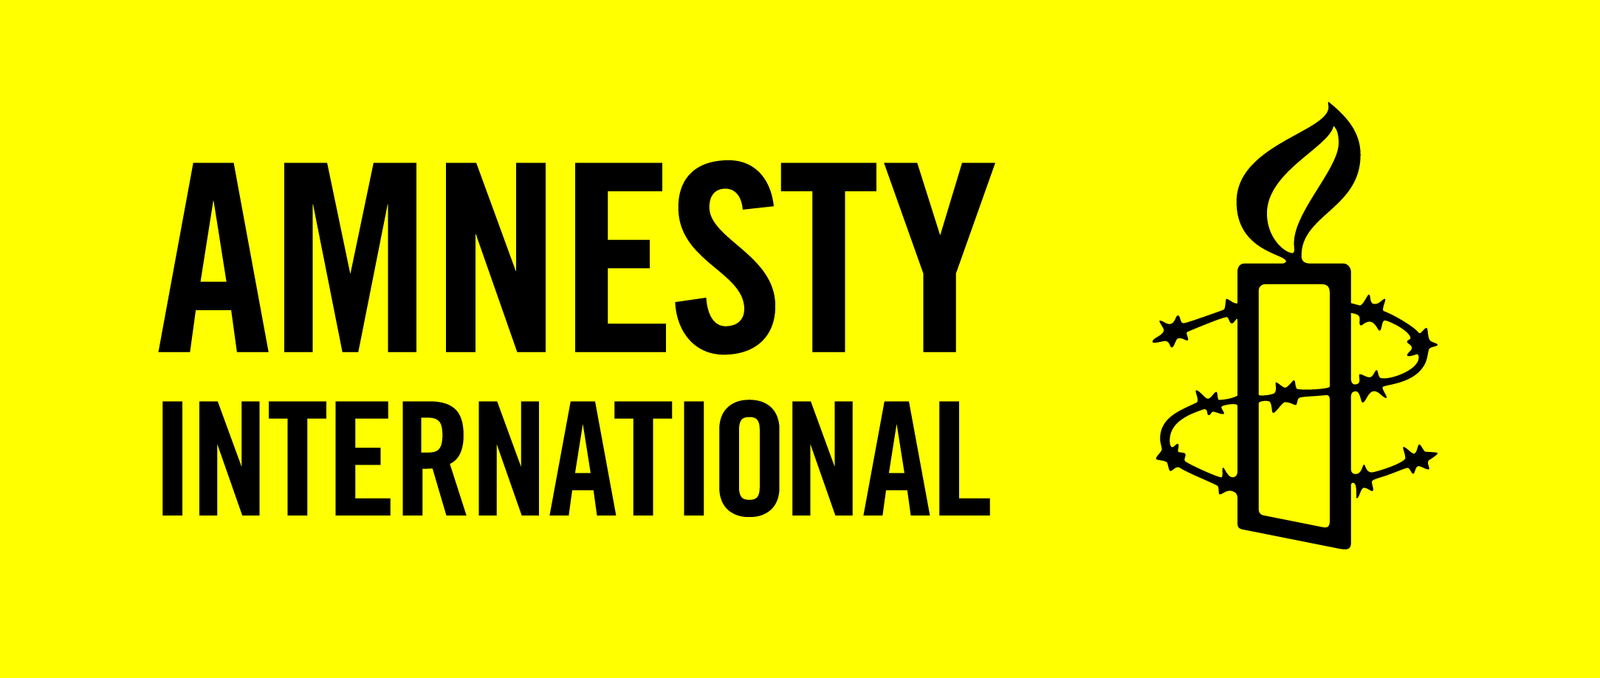 Zdjęcie przedstawia żółty prostokąt a w nim: po lewej stronie napis Amnesty International, a po prawej wizerunek zapalonej świeczki, którą oplata drut kolczasty. 